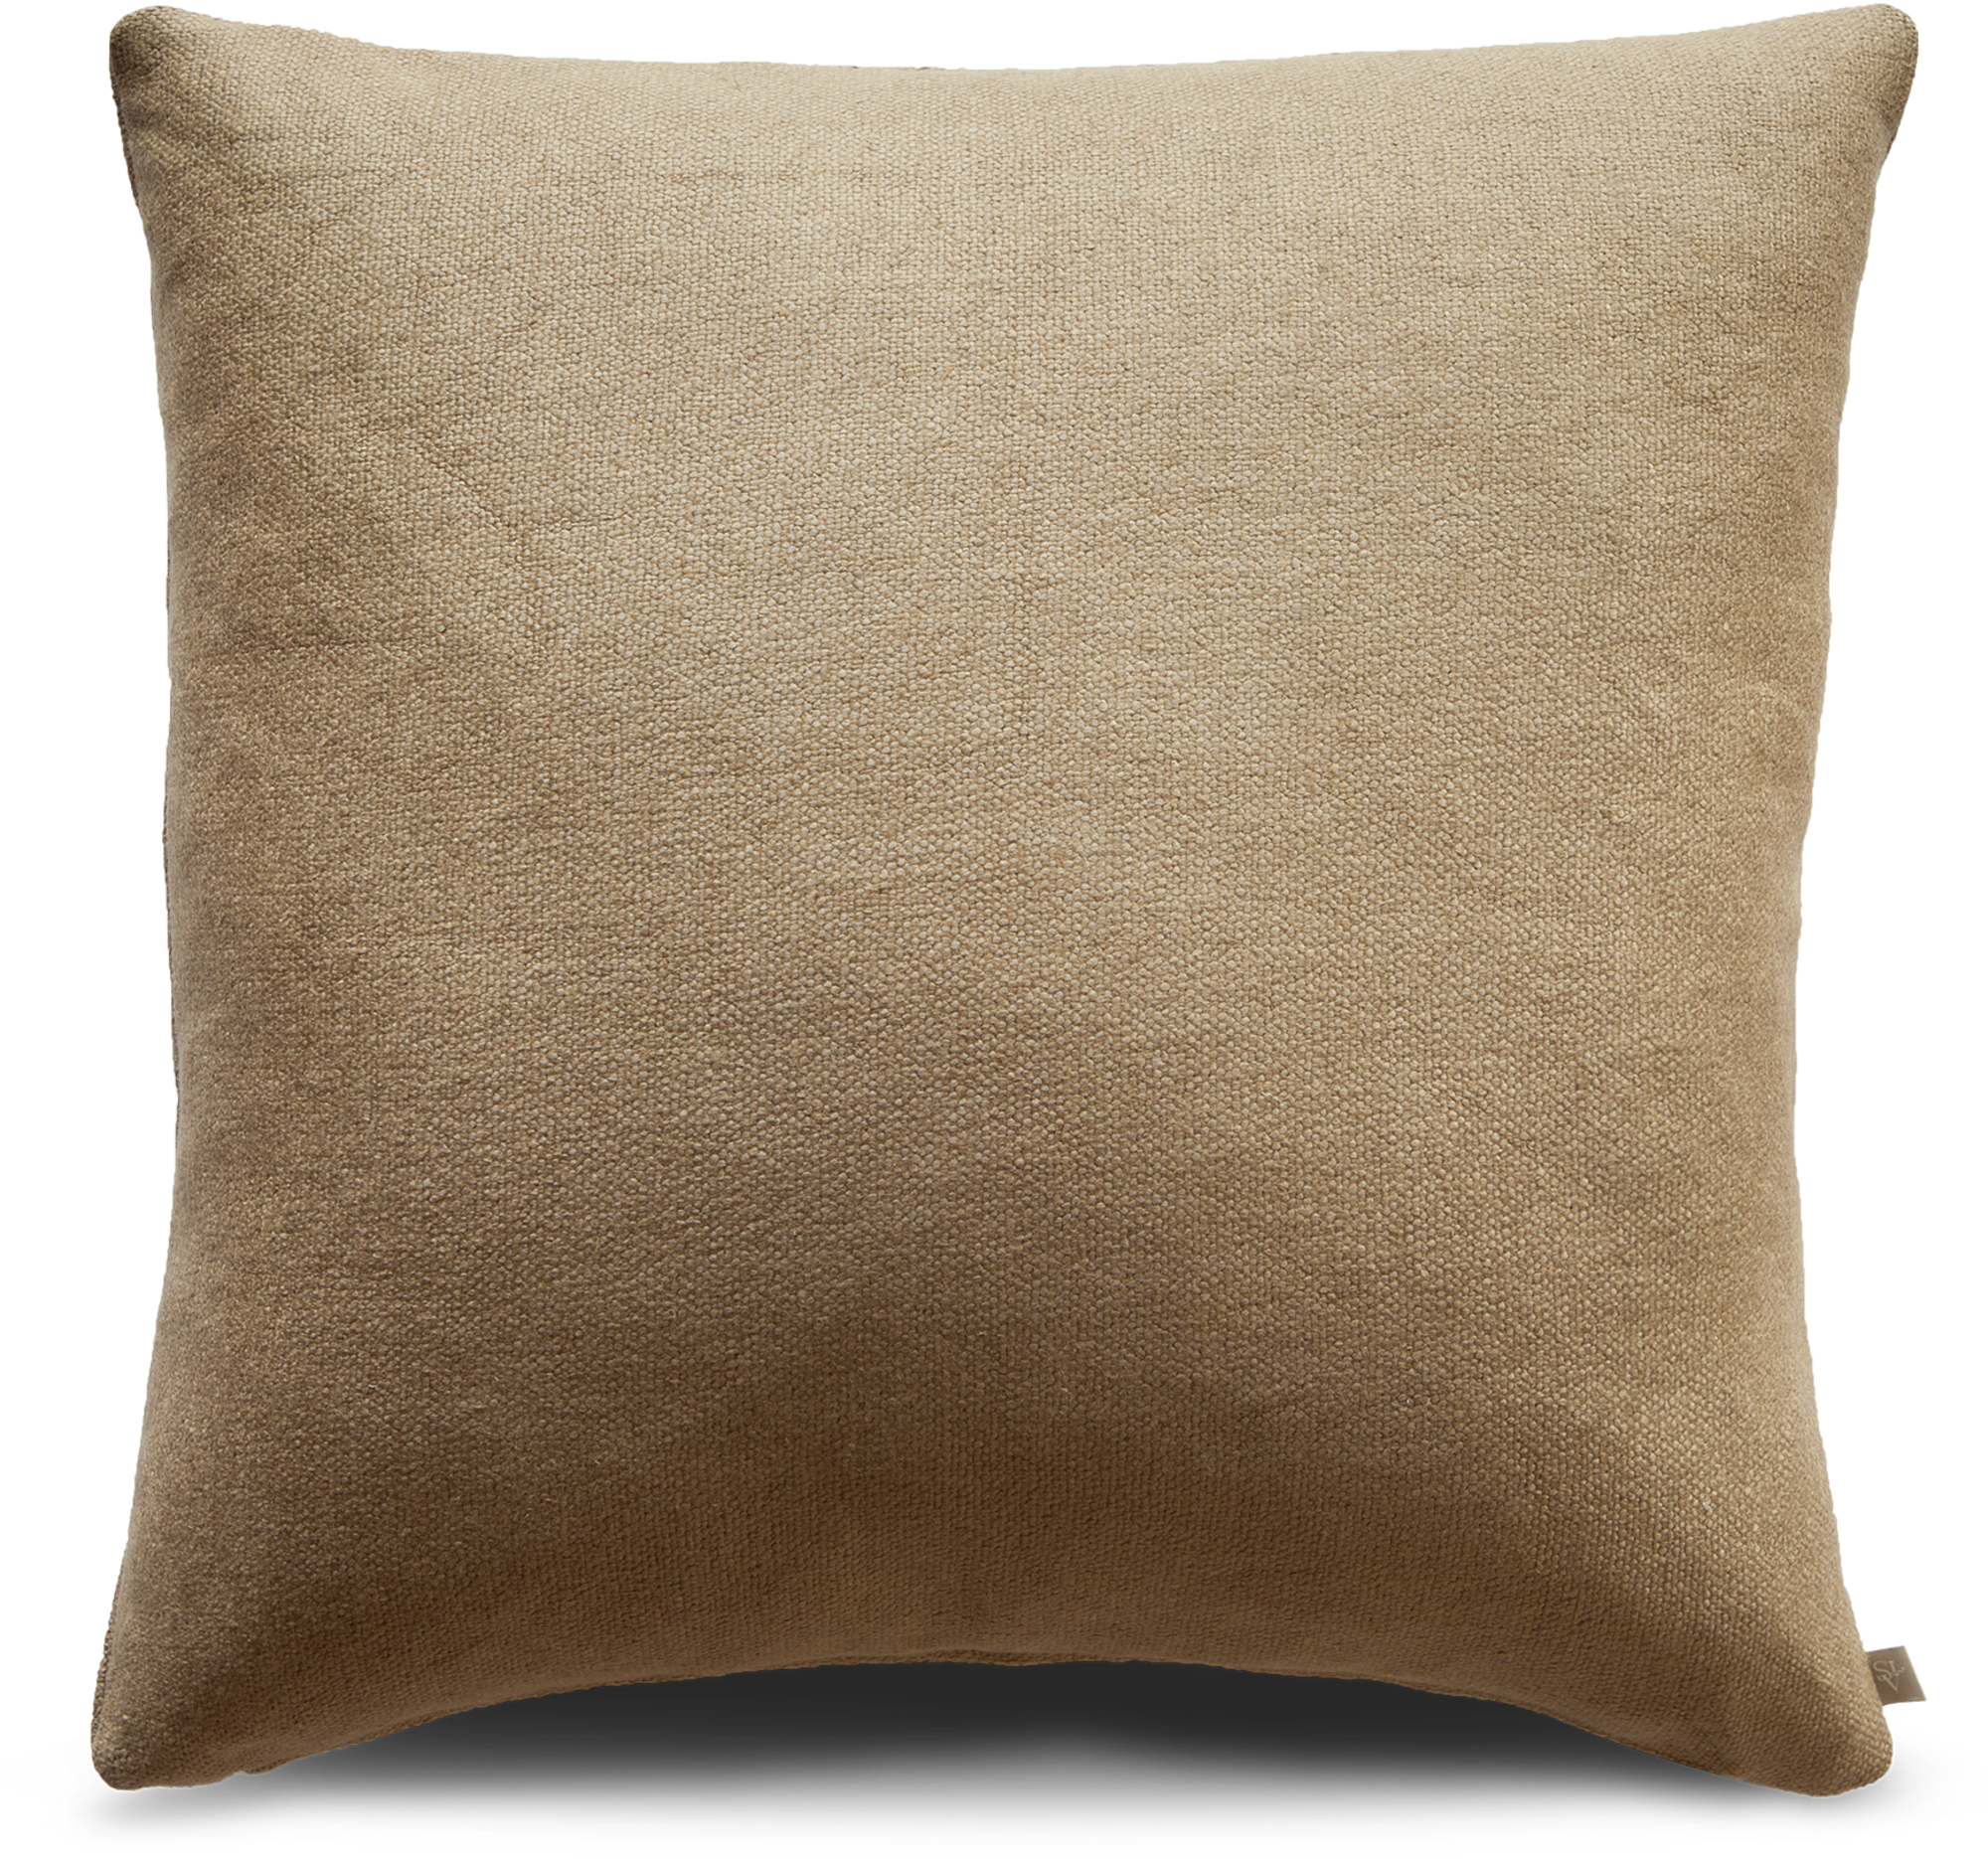 Fauna decorative pillow